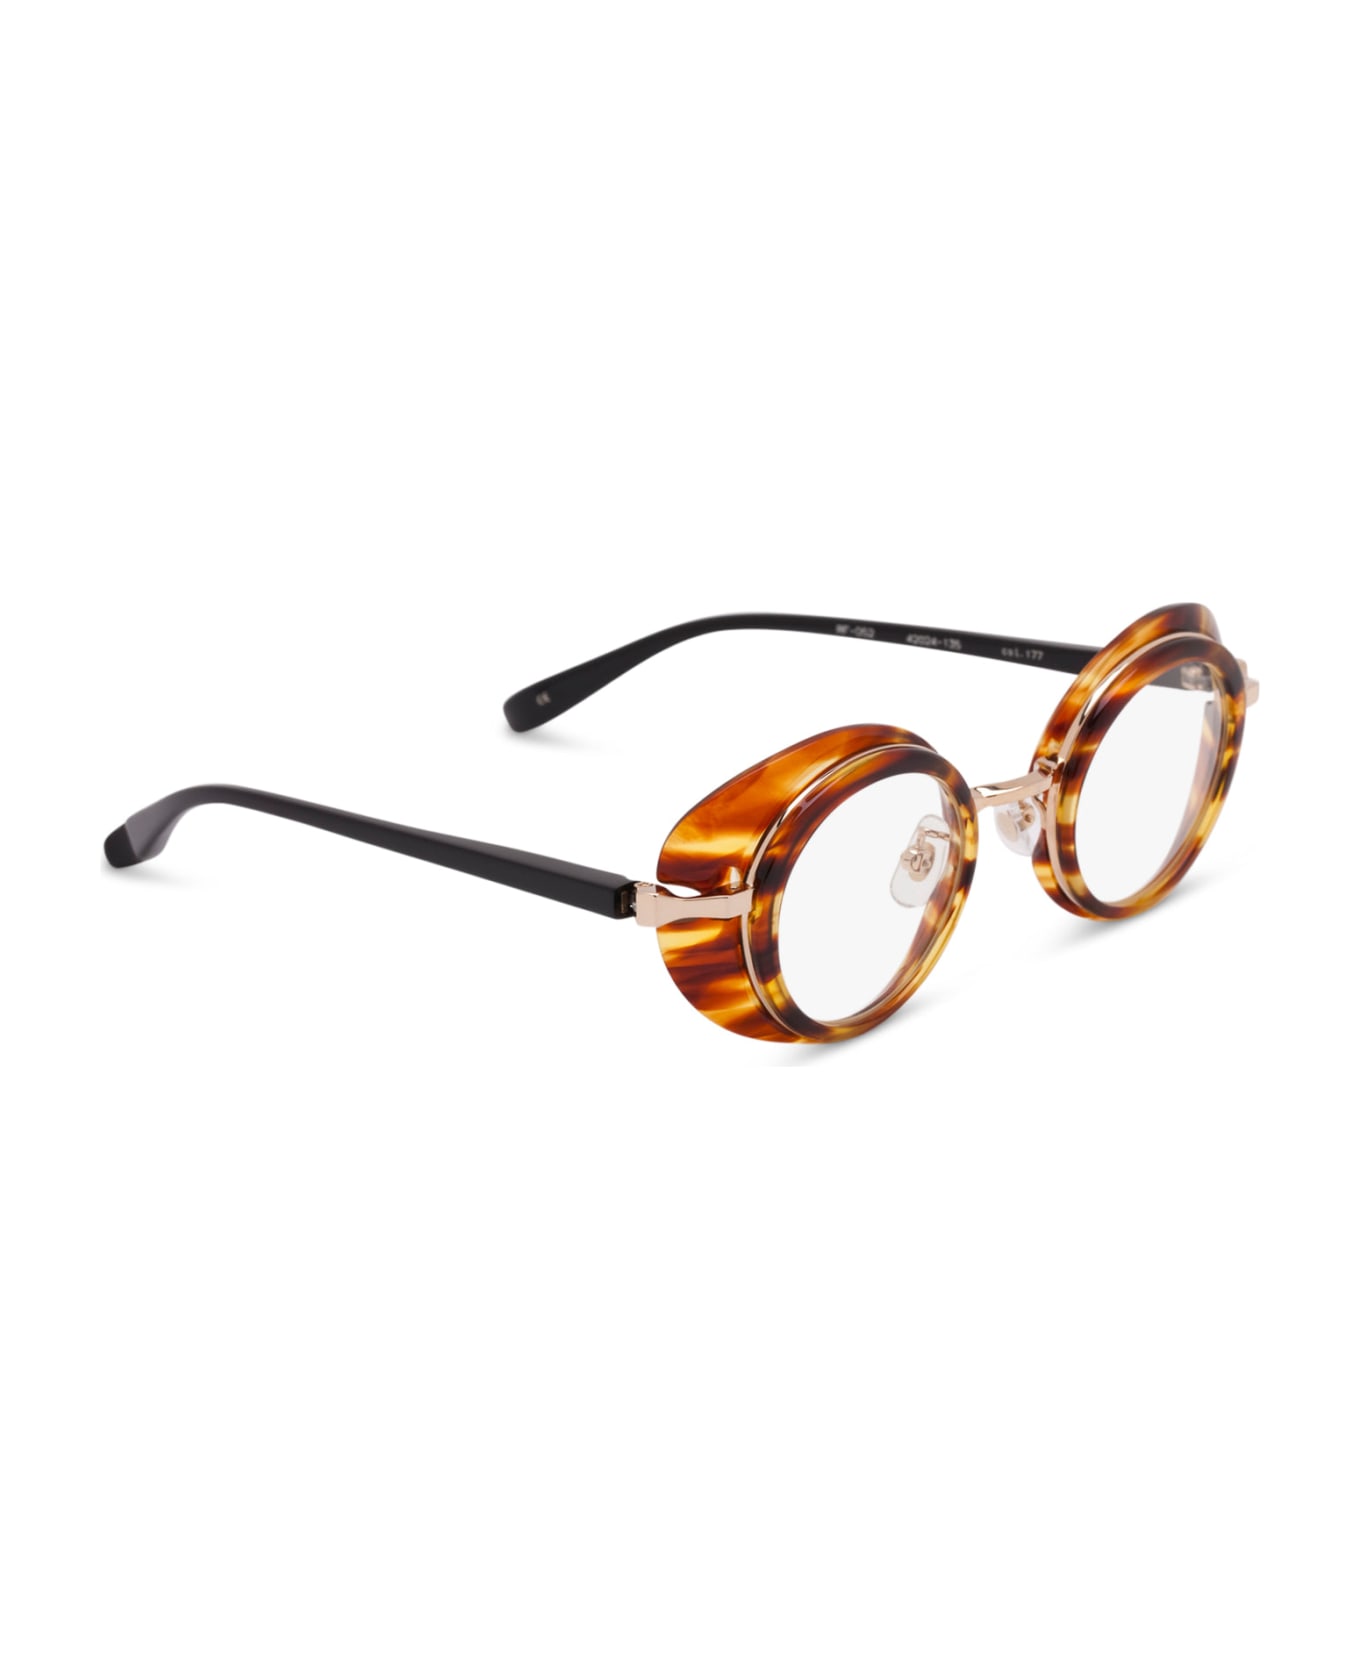 FACTORY900 Rf 052-177 Glasses - havana/black/gold アイウェア